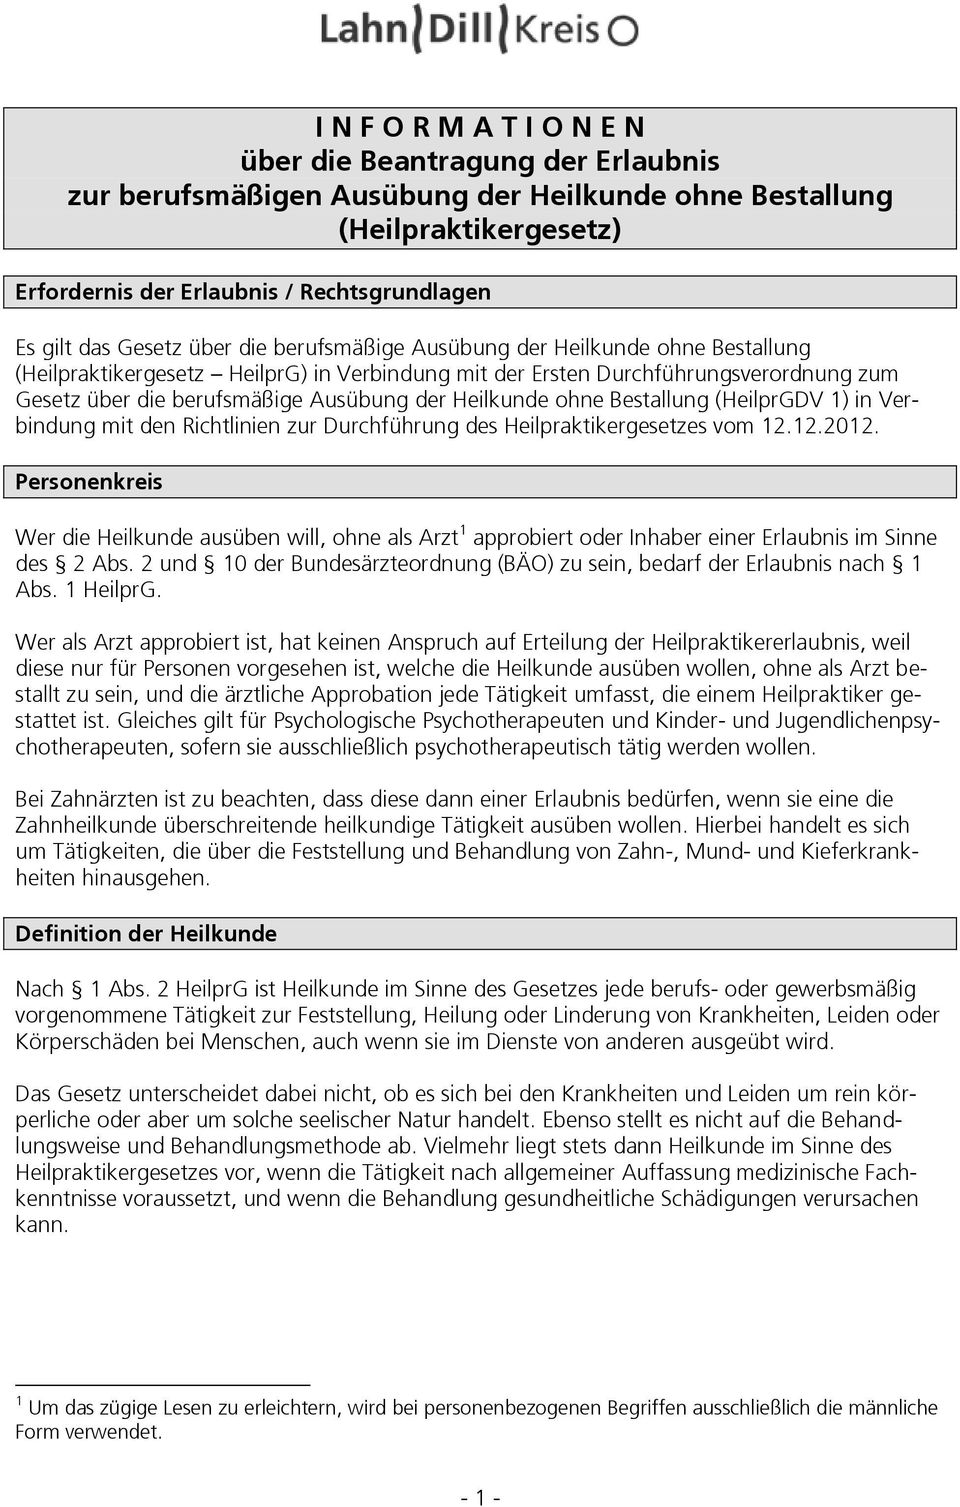 Heilkunde ohne Bestallung (HeilprGDV 1) in Verbindung mit den Richtlinien zur Durchführung des Heilpraktikergesetzes vom 12.12.2012.